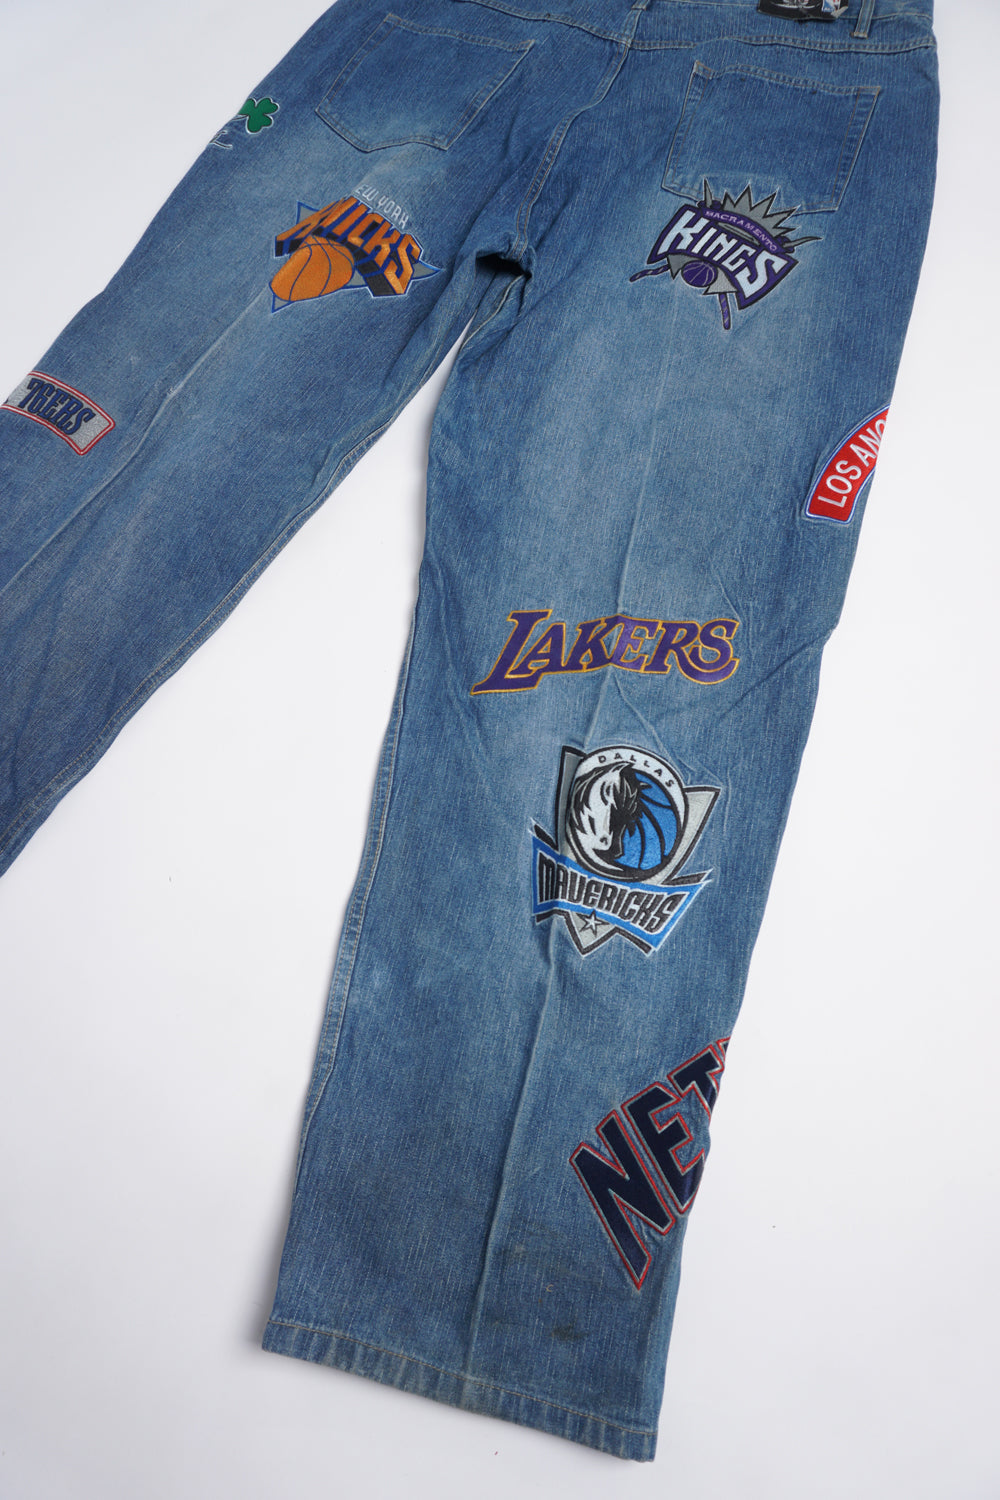 Vintage UNK NBA jeans, Size - 34x33, Condition - Good